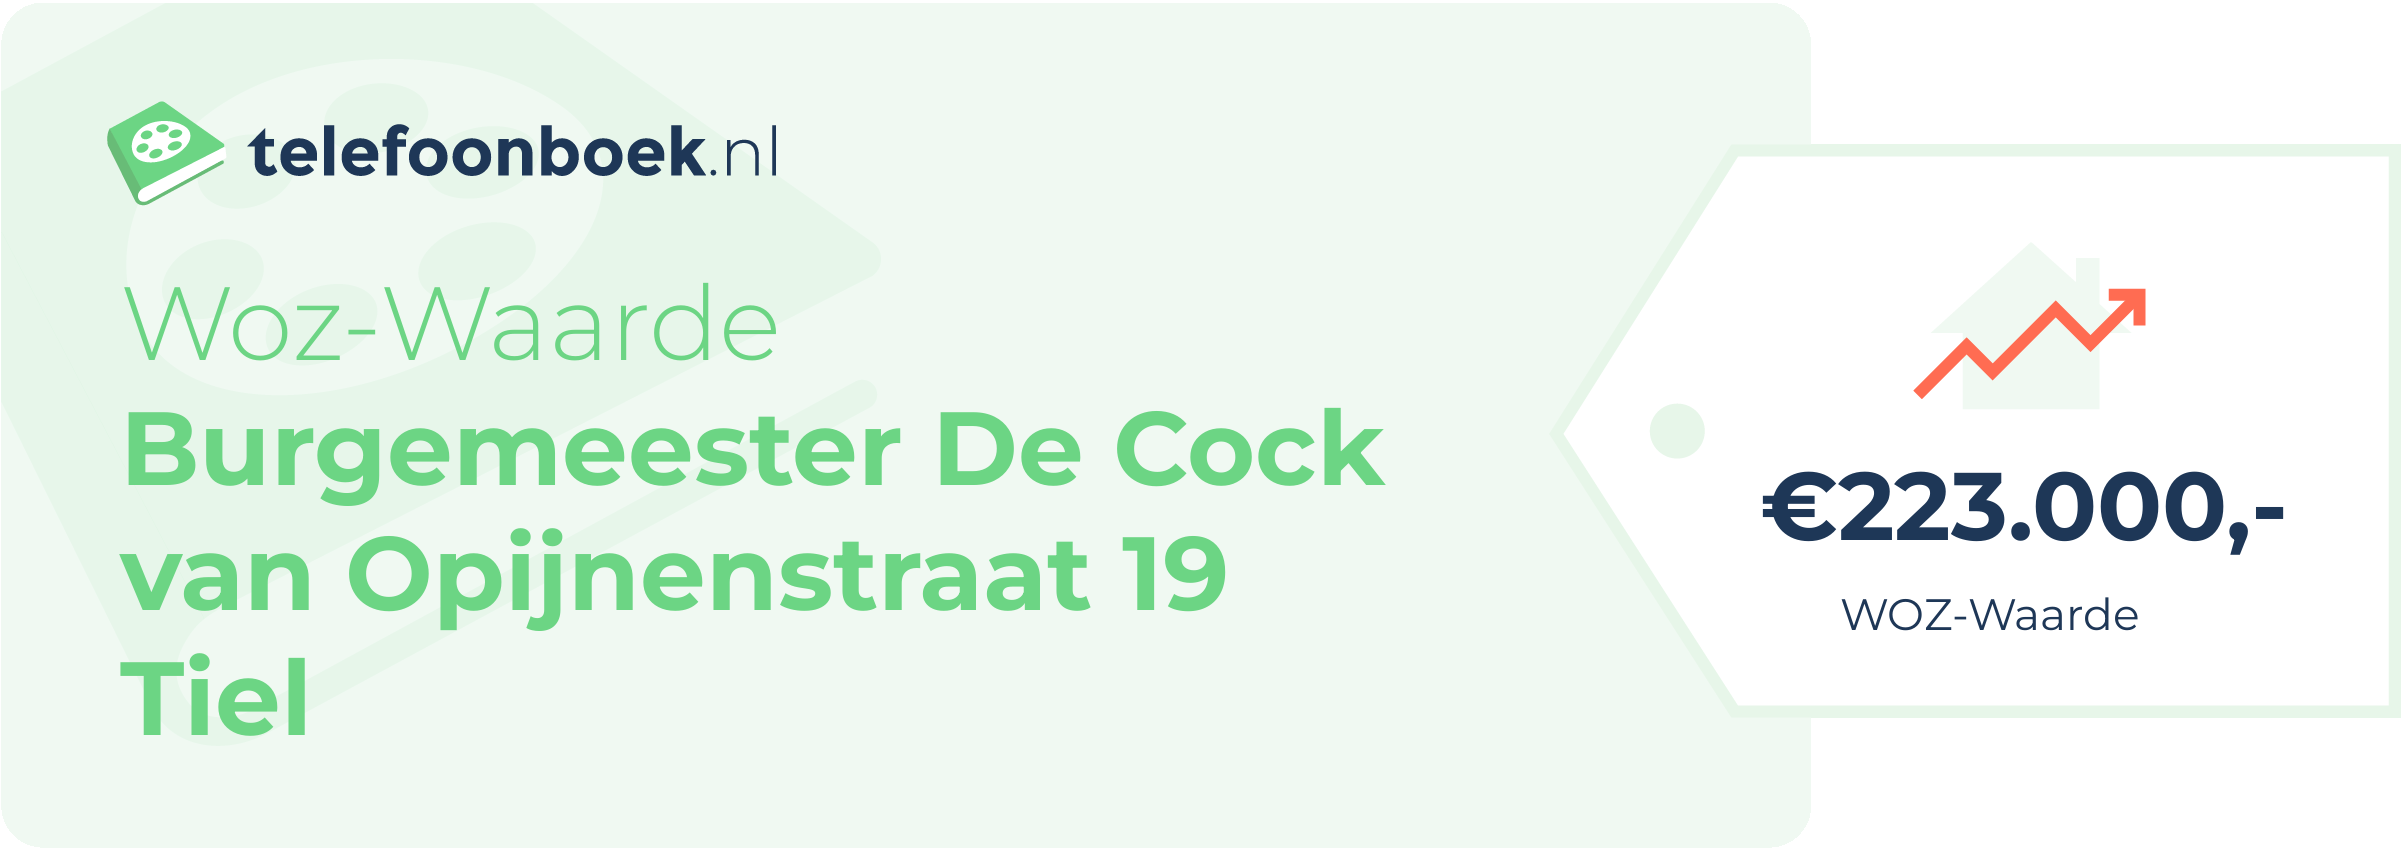 WOZ-waarde Burgemeester De Cock Van Opijnenstraat 19 Tiel